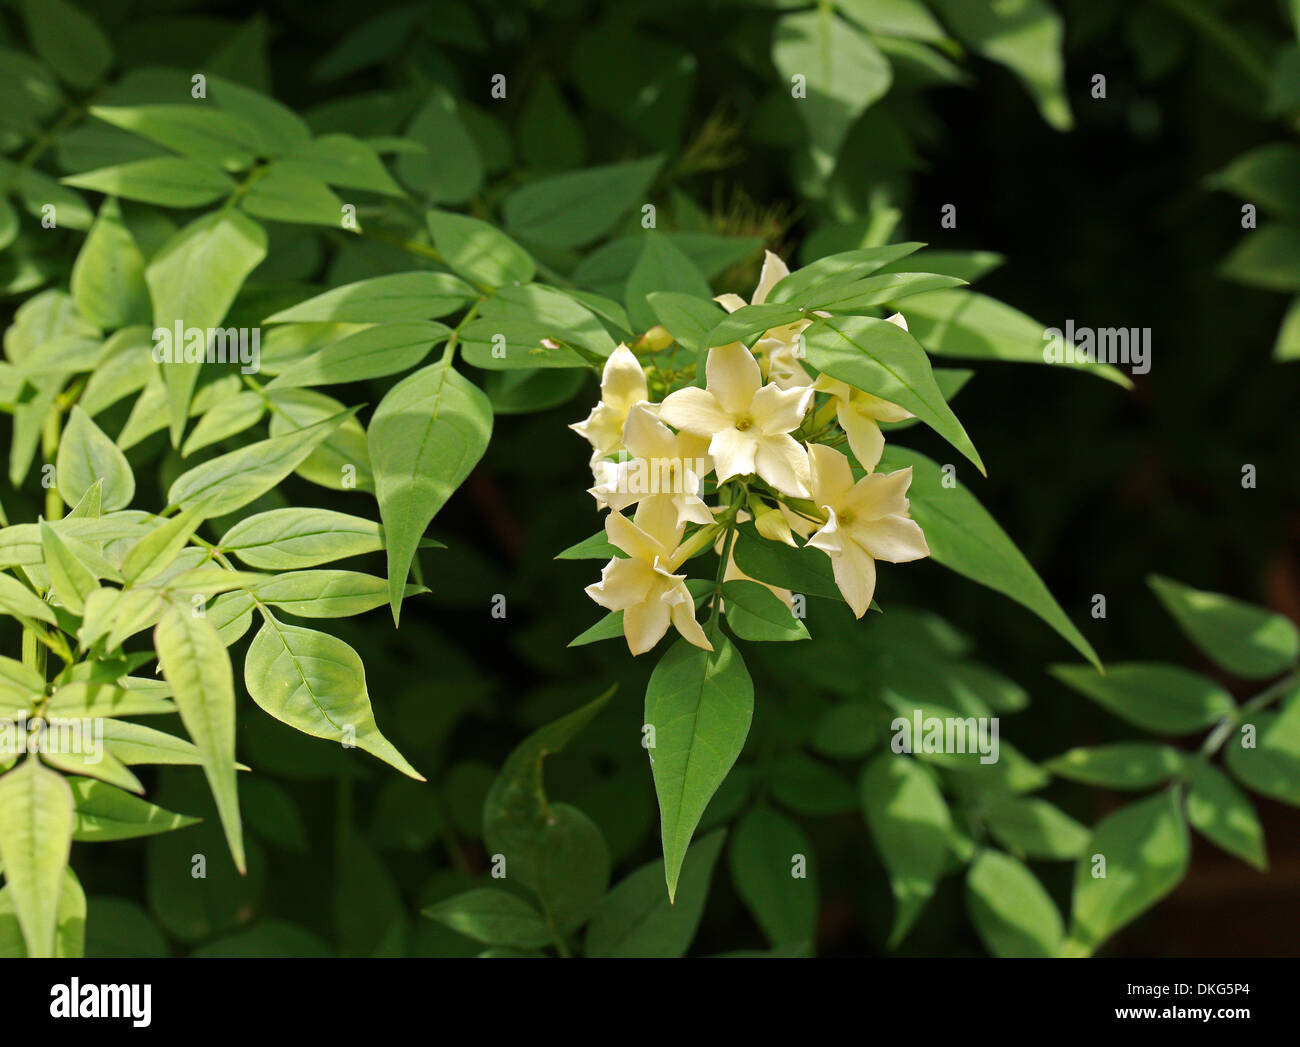 Jasmine or Jessamine, Poet's Jasmine, Jasminum officinale 'Clotted Cream', Oleaceae. Syn. Jasminum grandiflorum. Stock Photo